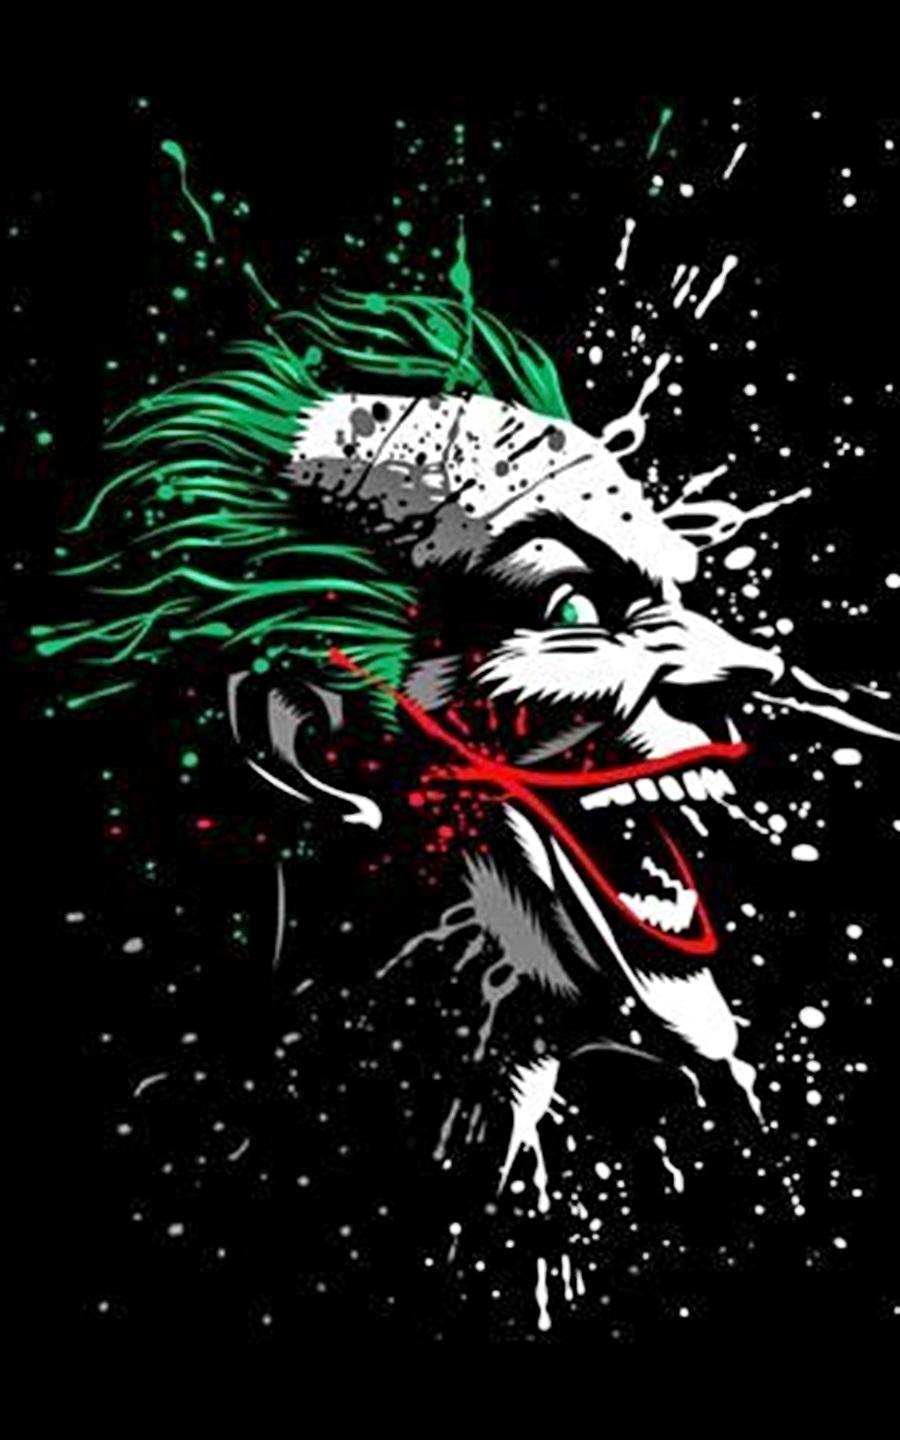 Download Gambar Wallpaper Hd Keren Joker terbaru 2020